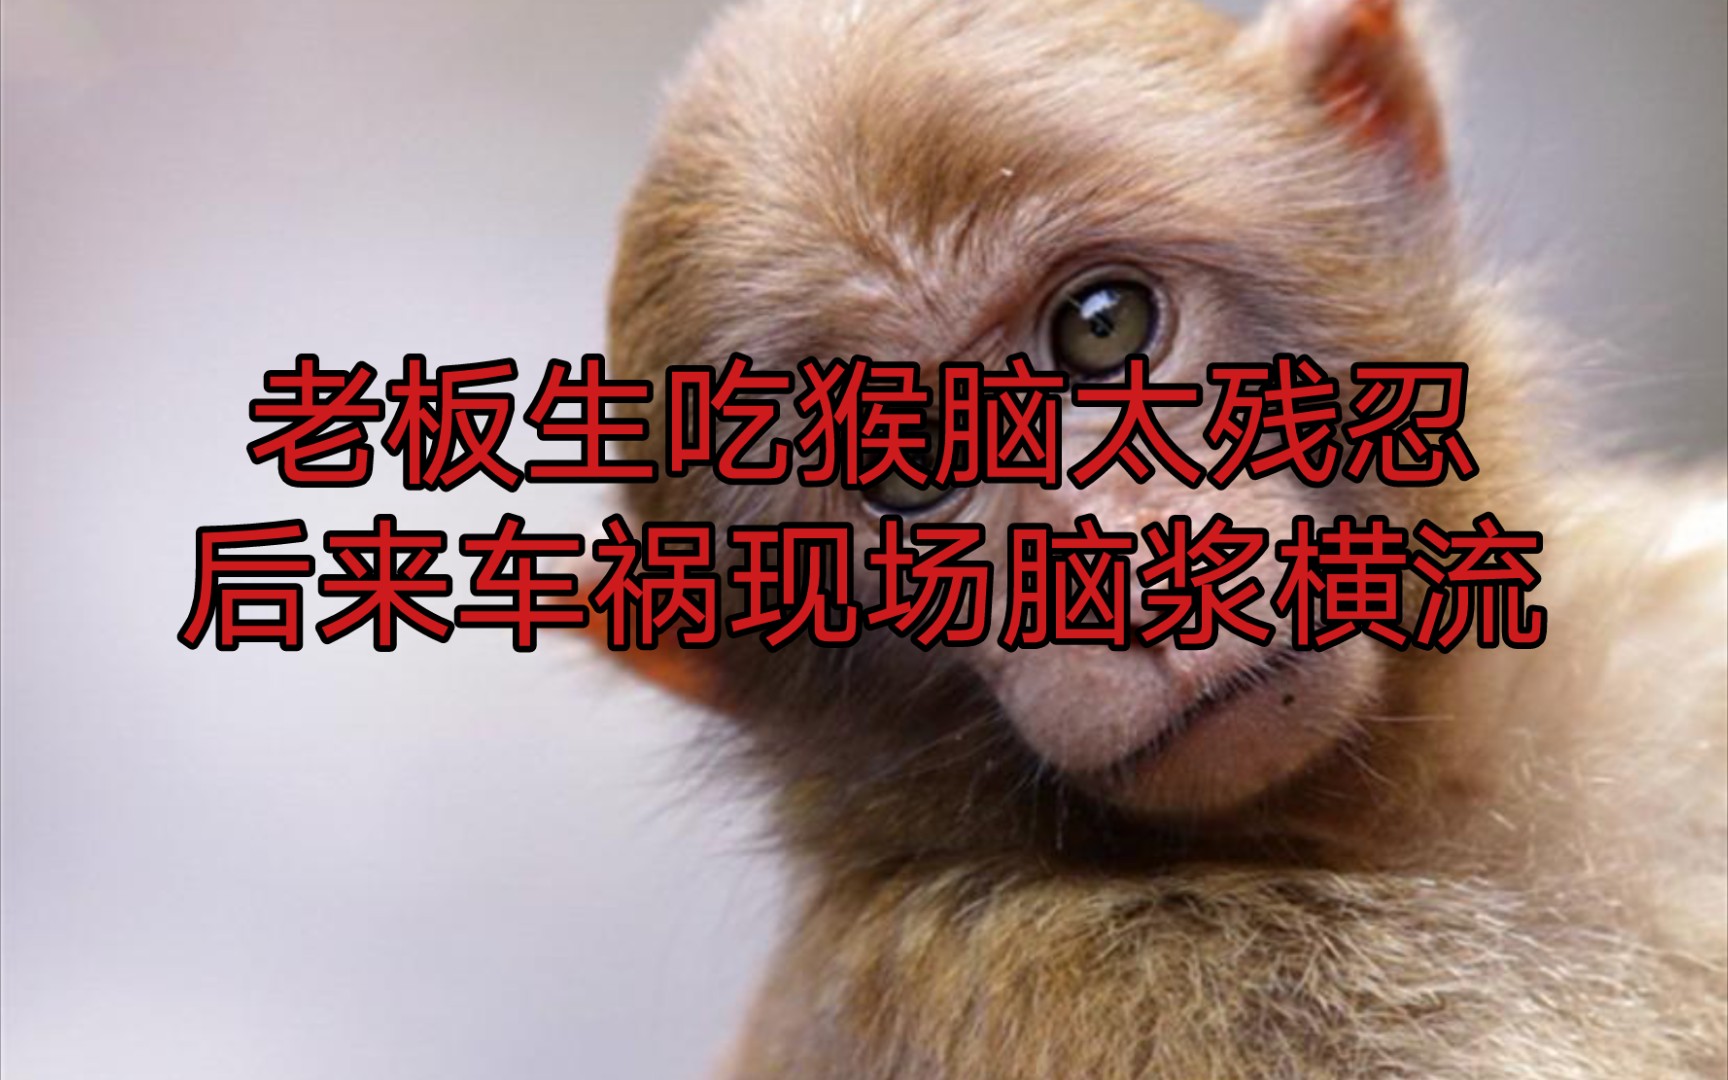 广东吃猴脑事件照片图片